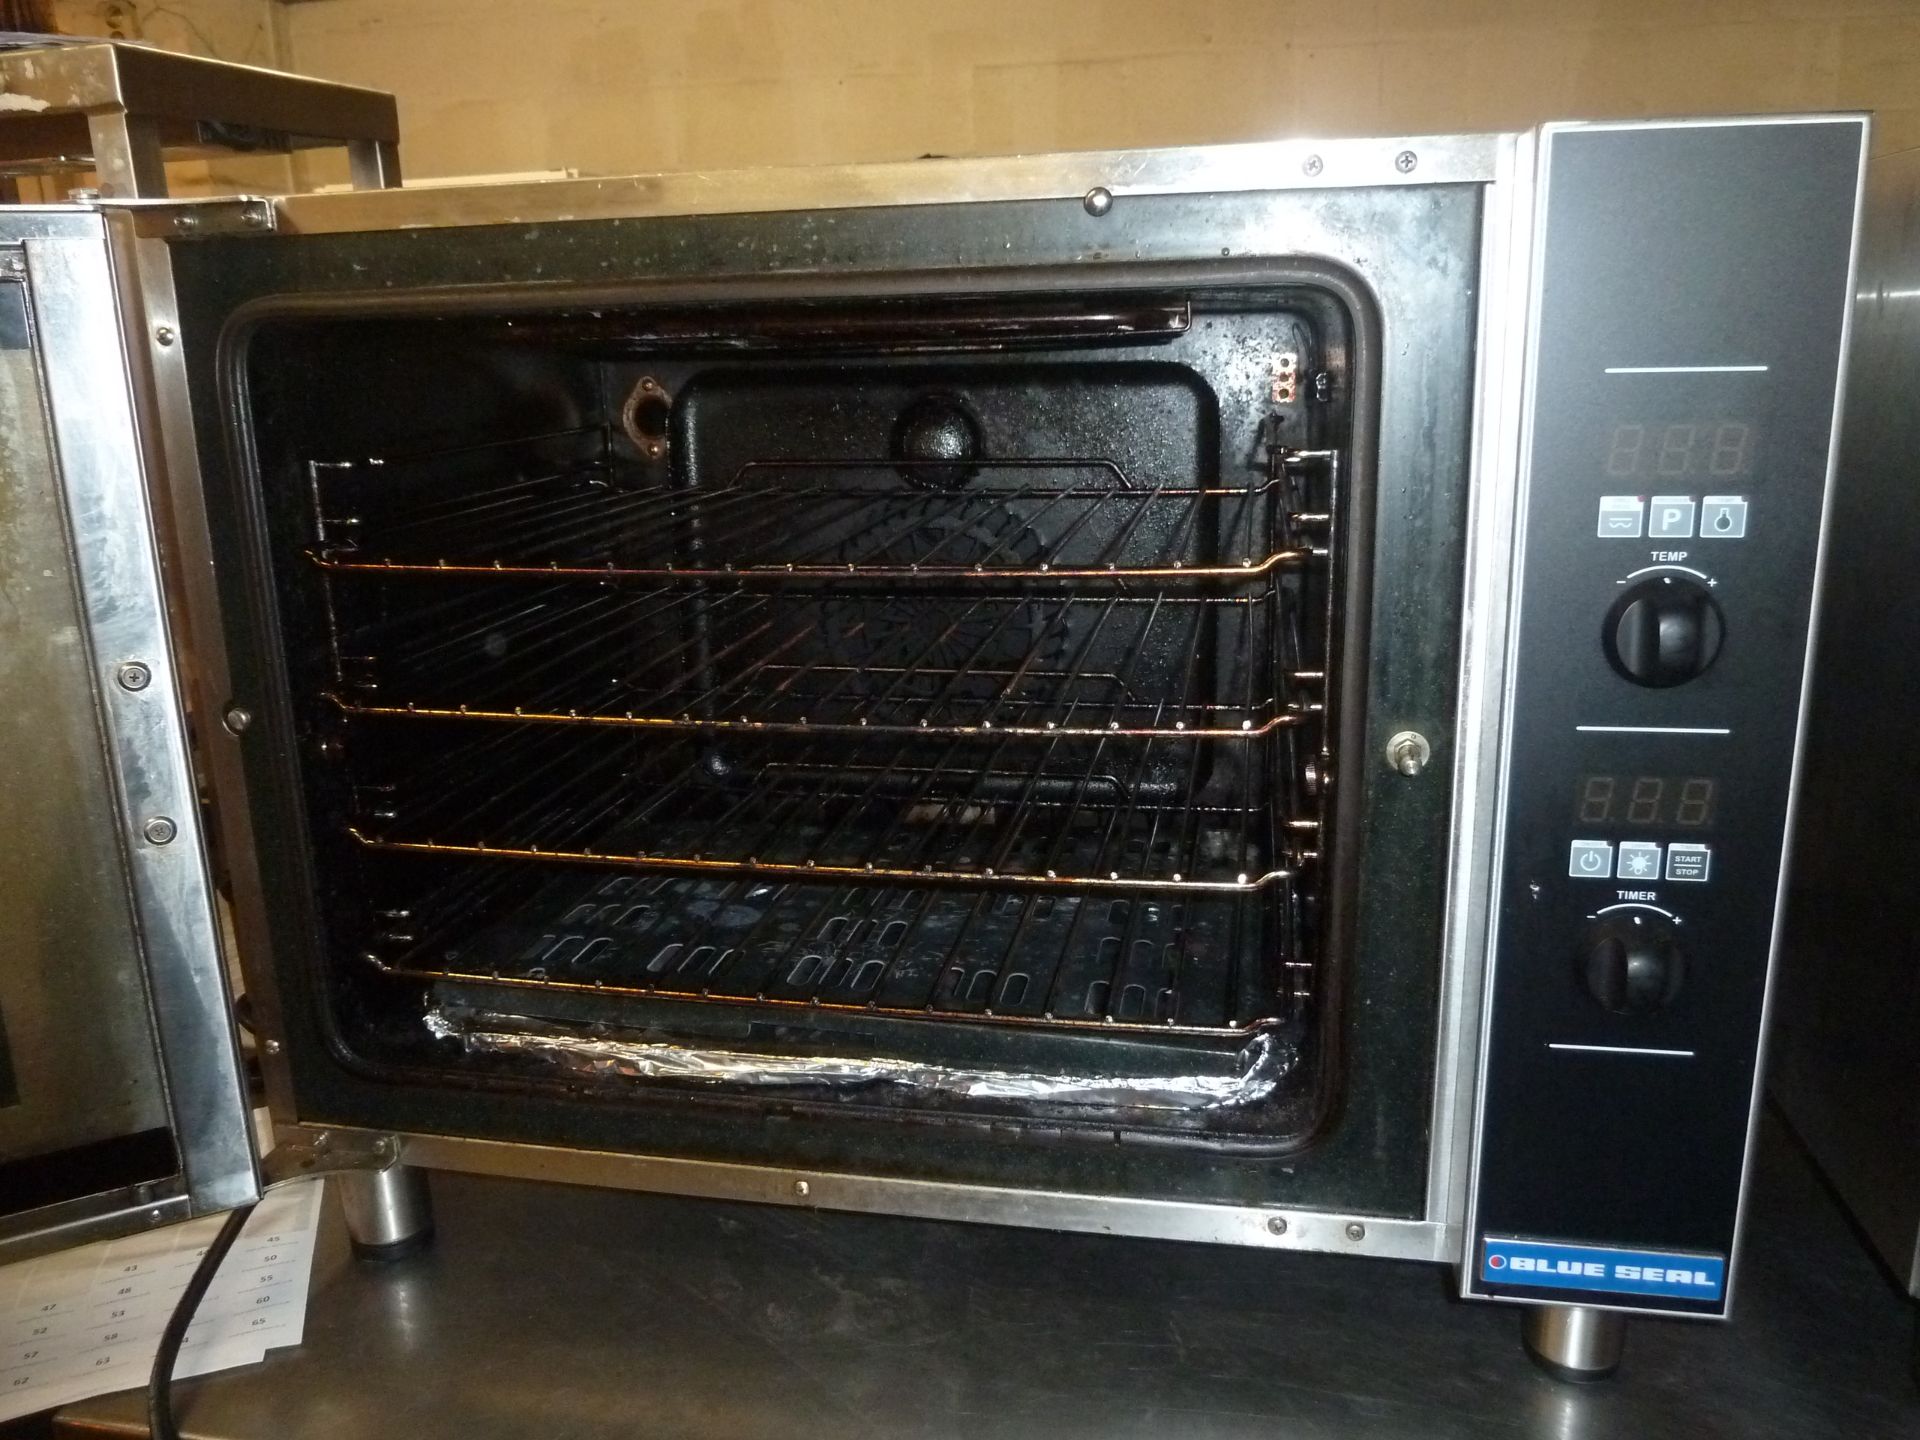 *Blue Seal Turbofan oven Model E31D4 - 4 shelf 810w x 600d x 630h - Image 2 of 3